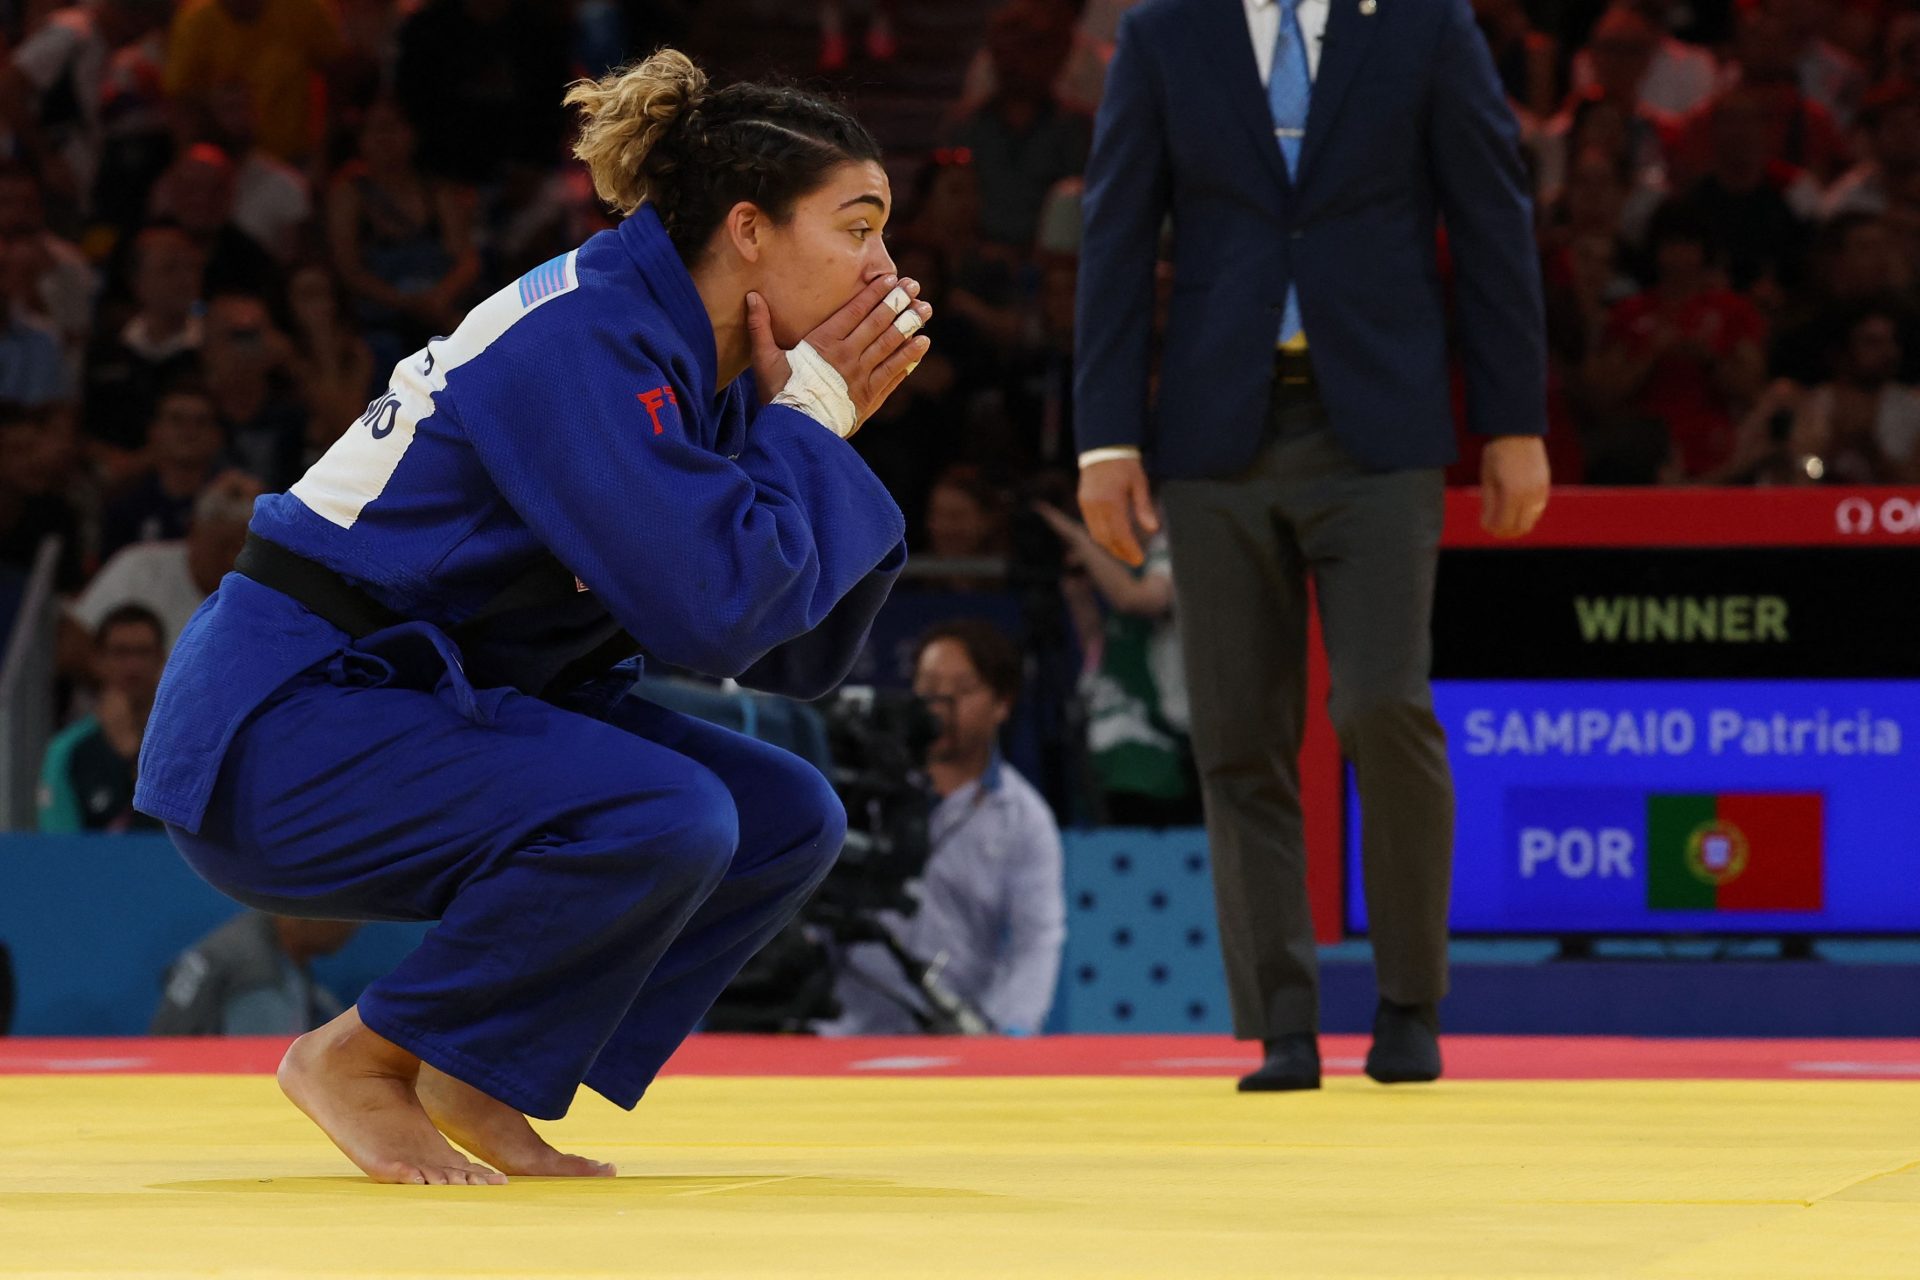 Judoca Patrícia Sampaio conquista primeira medalha para Portugal